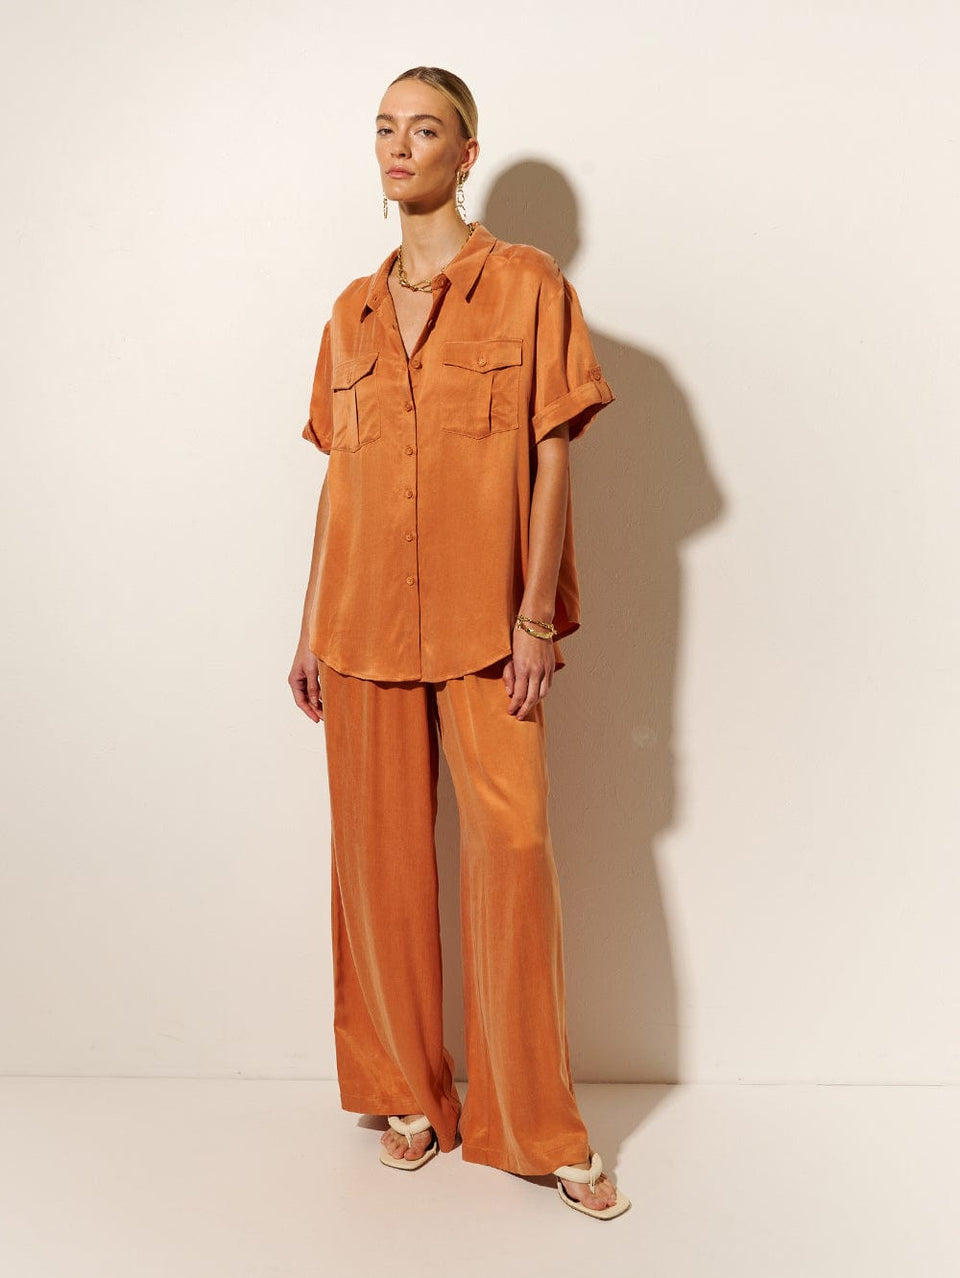 KIVARI Bianca Shirt | Model wears Orange Shirt